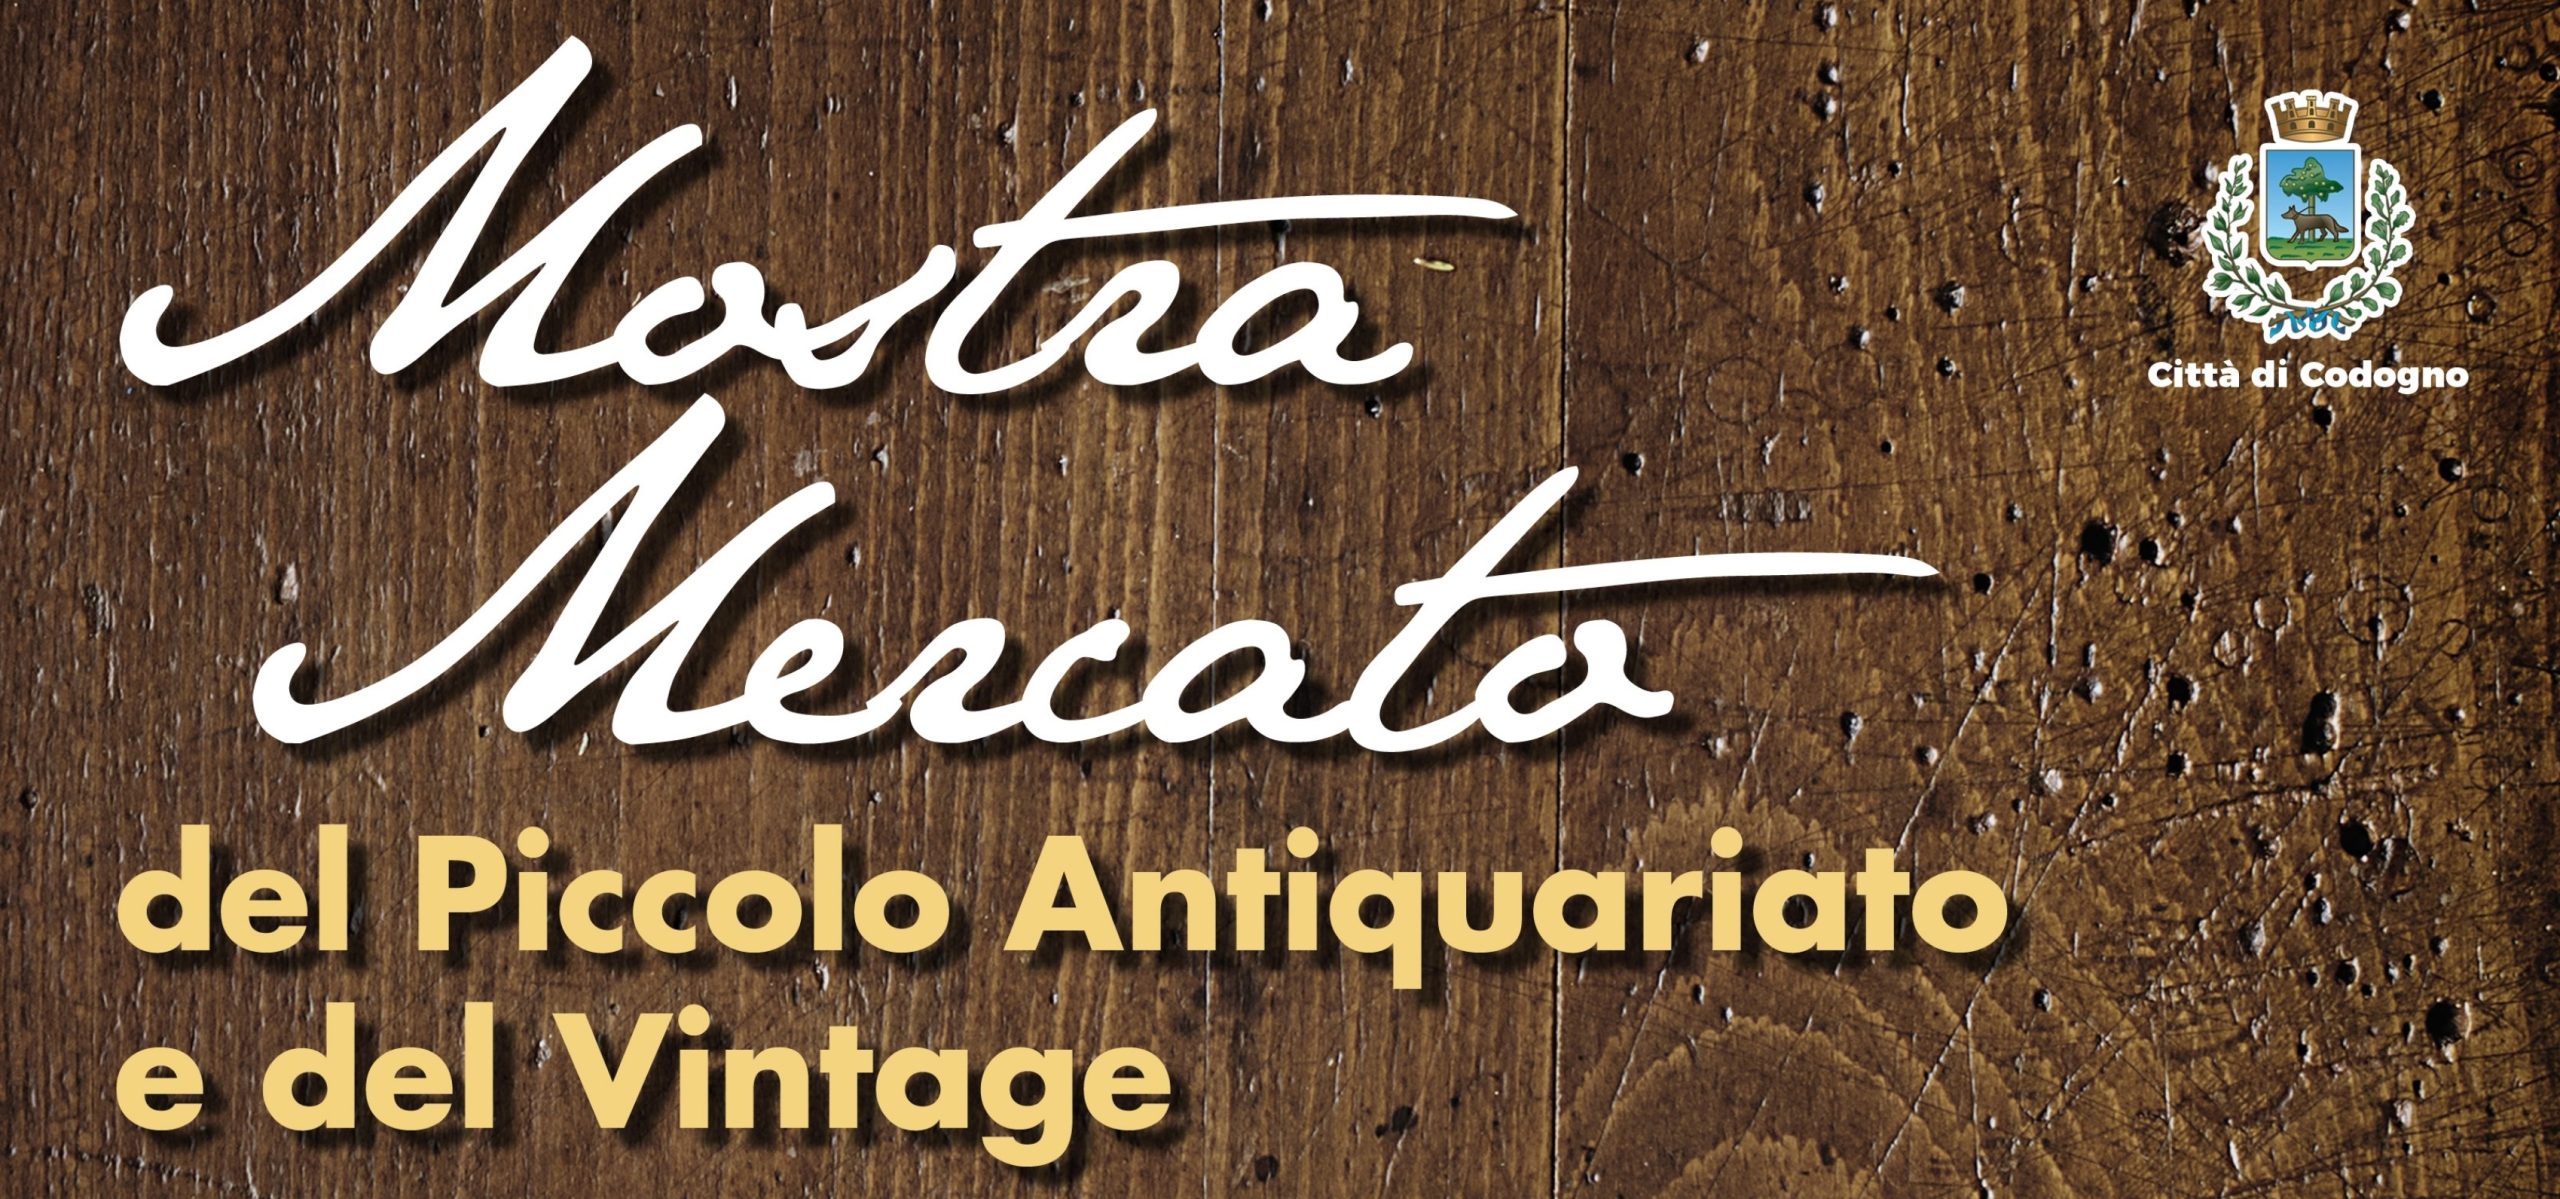 Banner per la Mostra mercato del piccolo antiquariato e del vintage